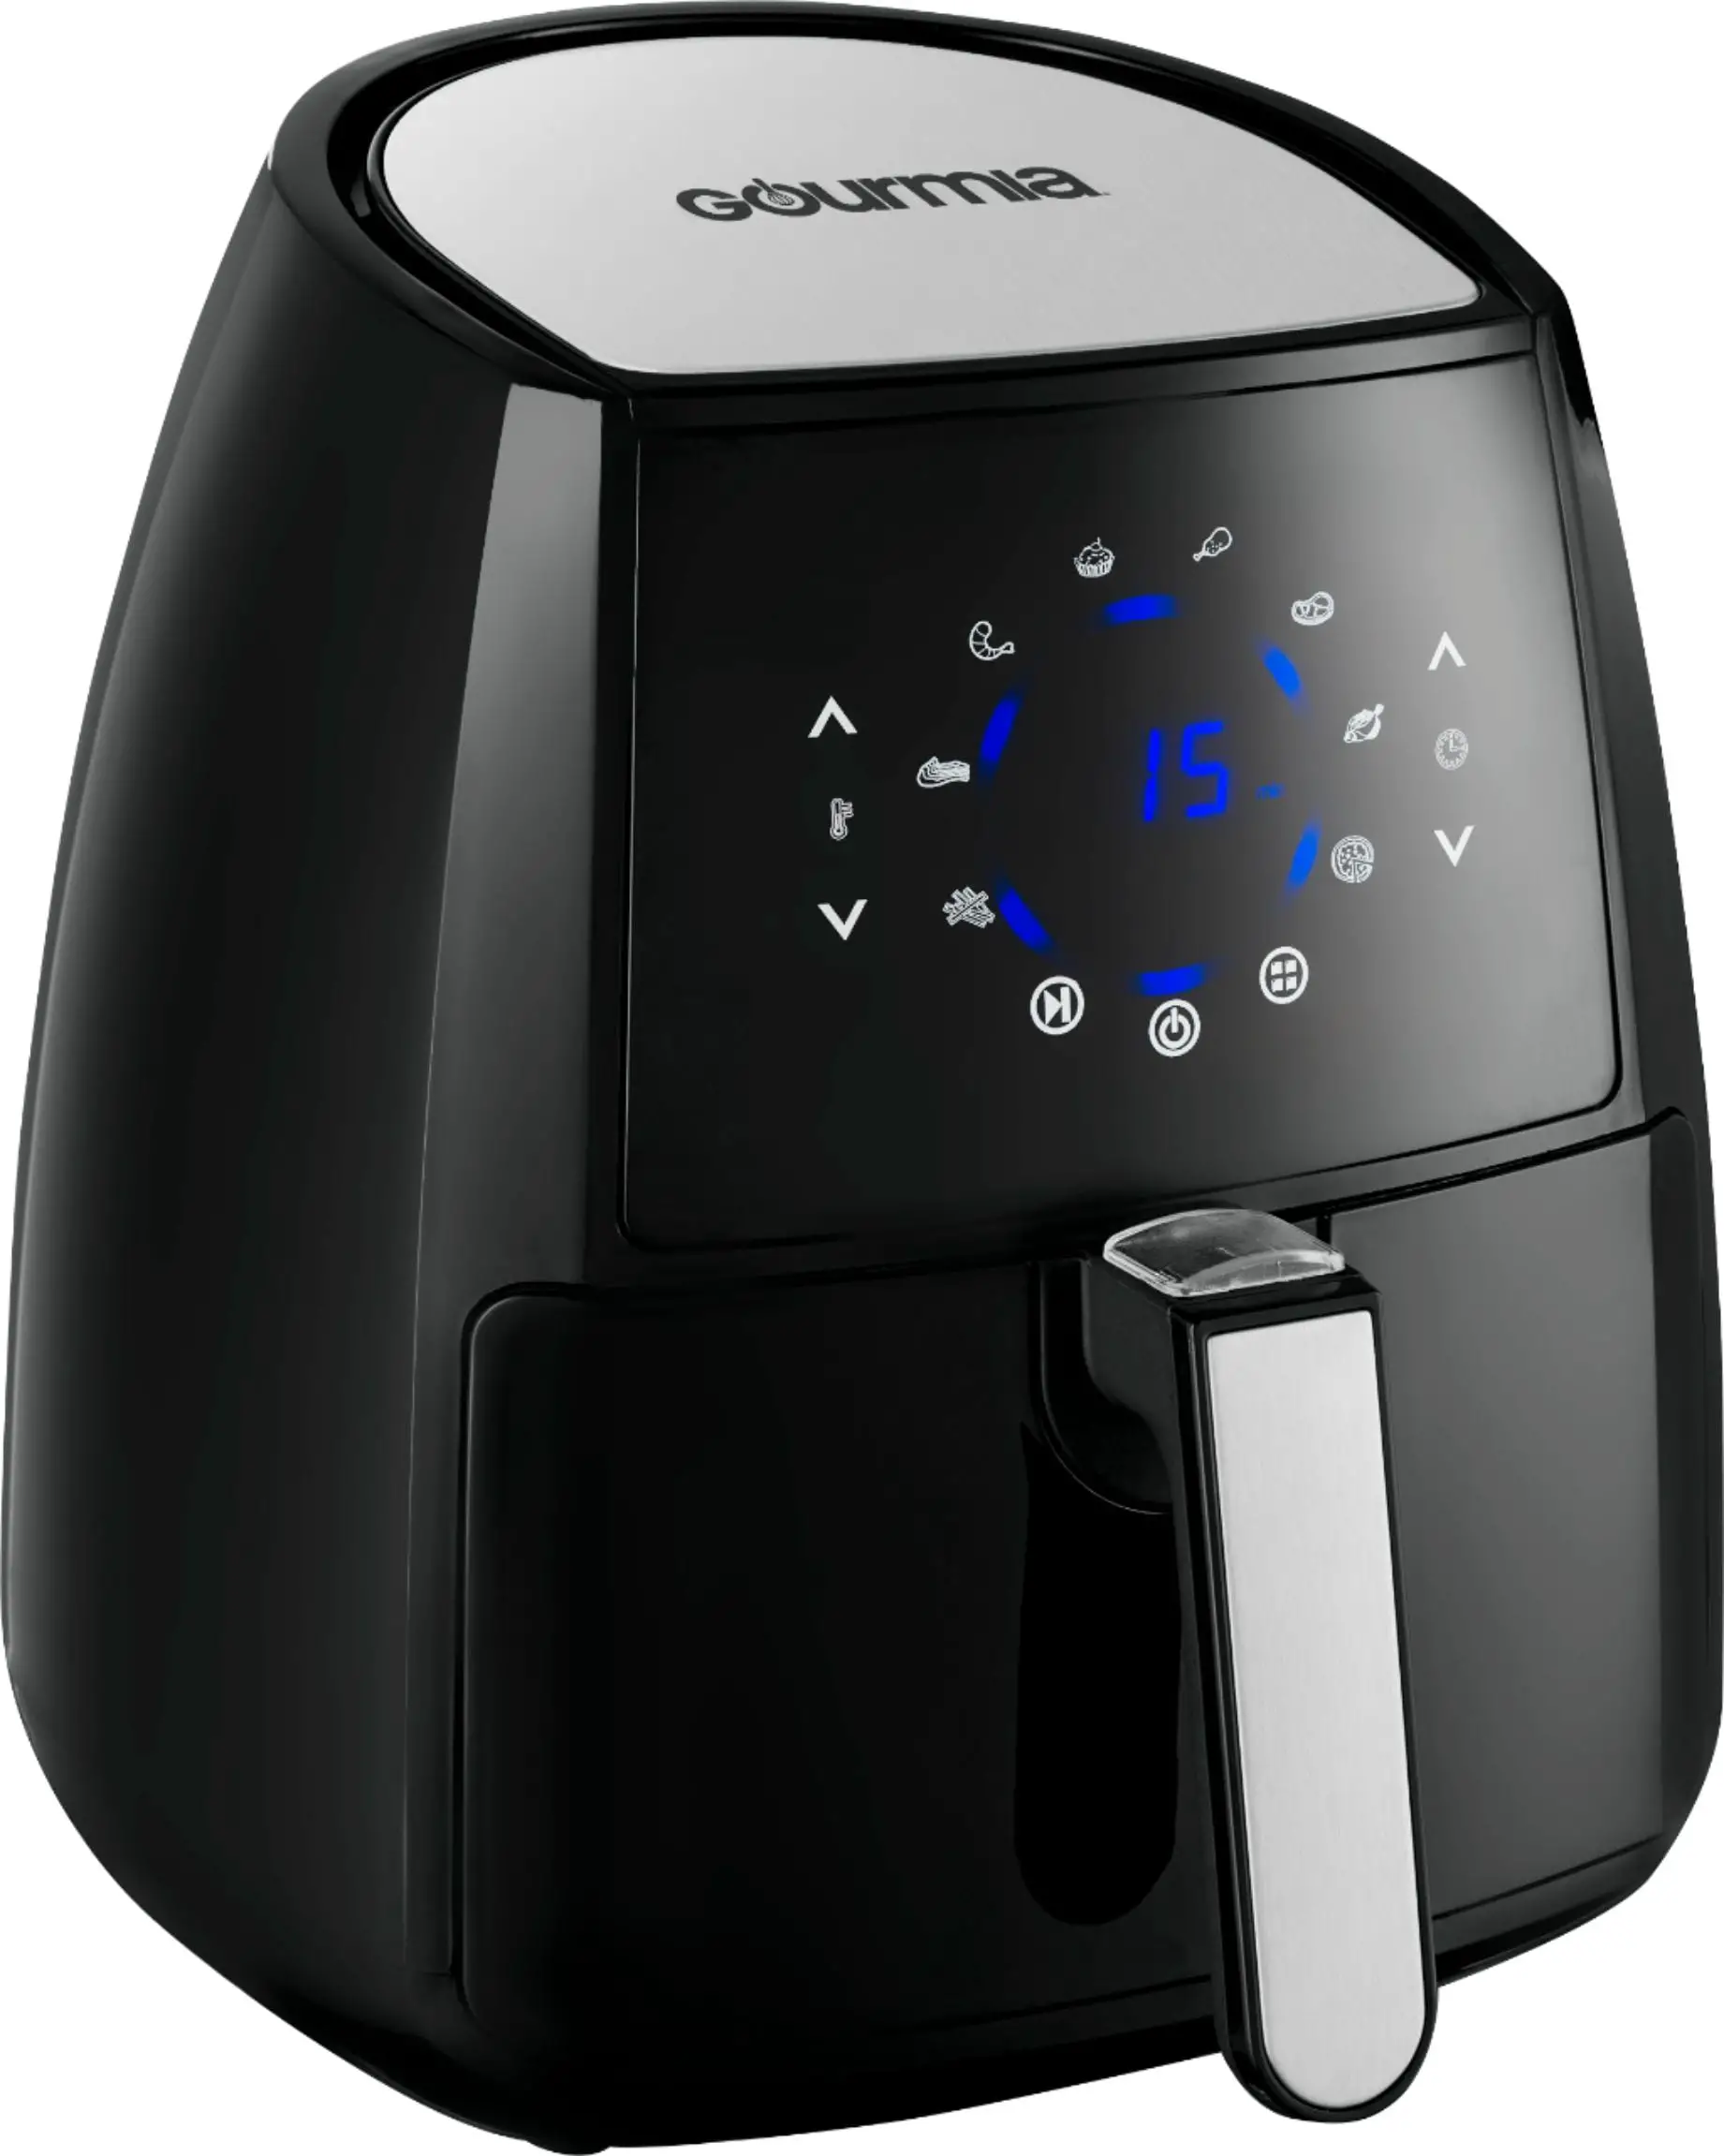 Customer Reviews: Gourmia 4.5 qt. Digital Air Fryer Black ...